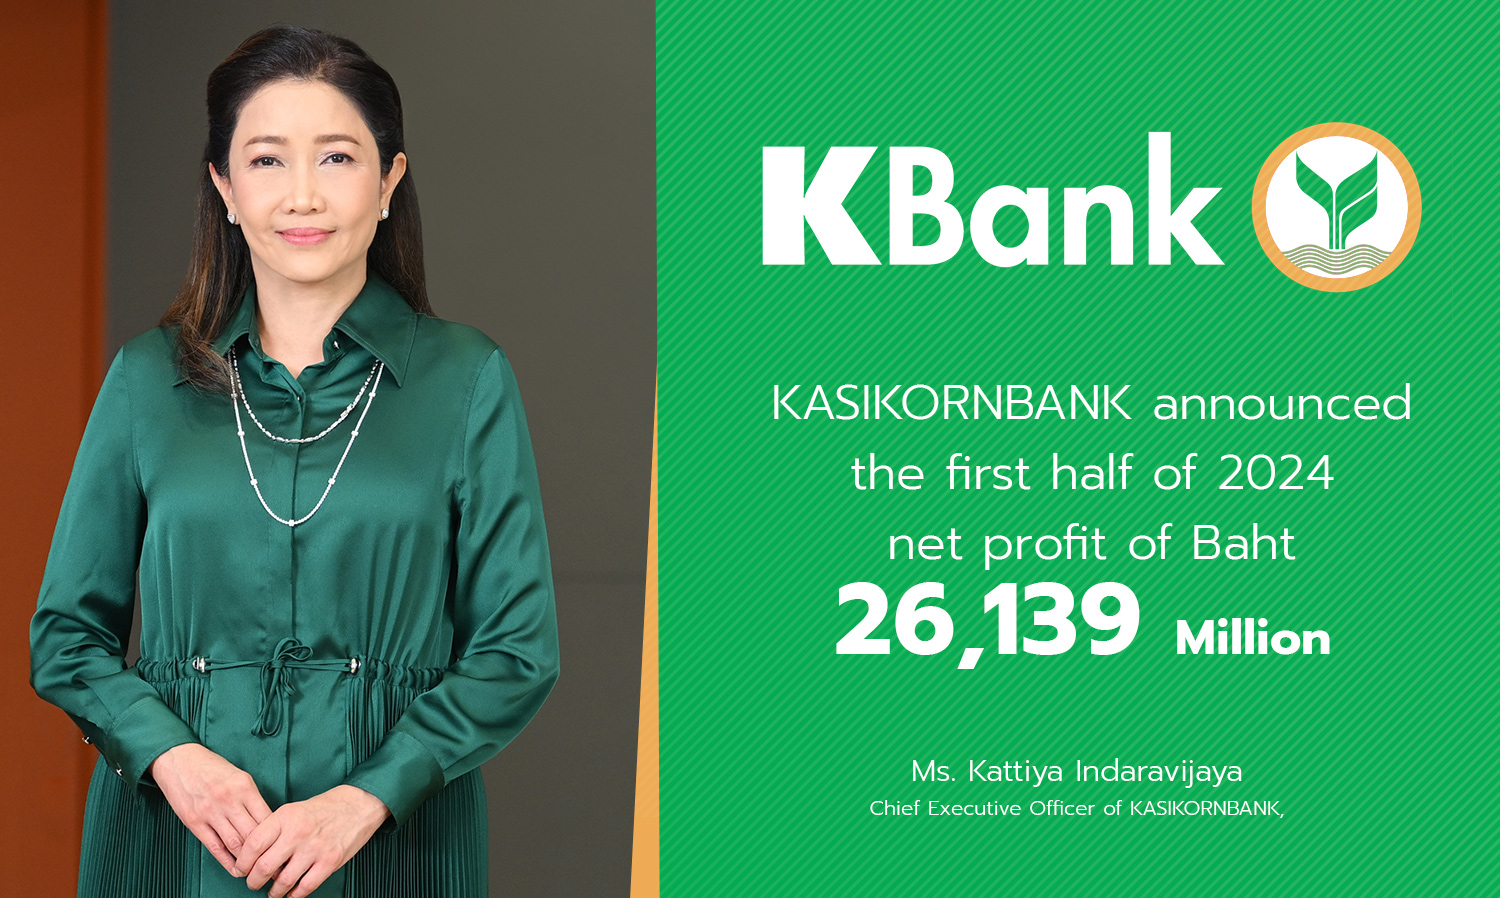 ธนาคารกสิกรไทย แจ้งผลประกอบการงวดครึ่งปีแรก ปี 67 กำไร 26,139 ล้านบาท